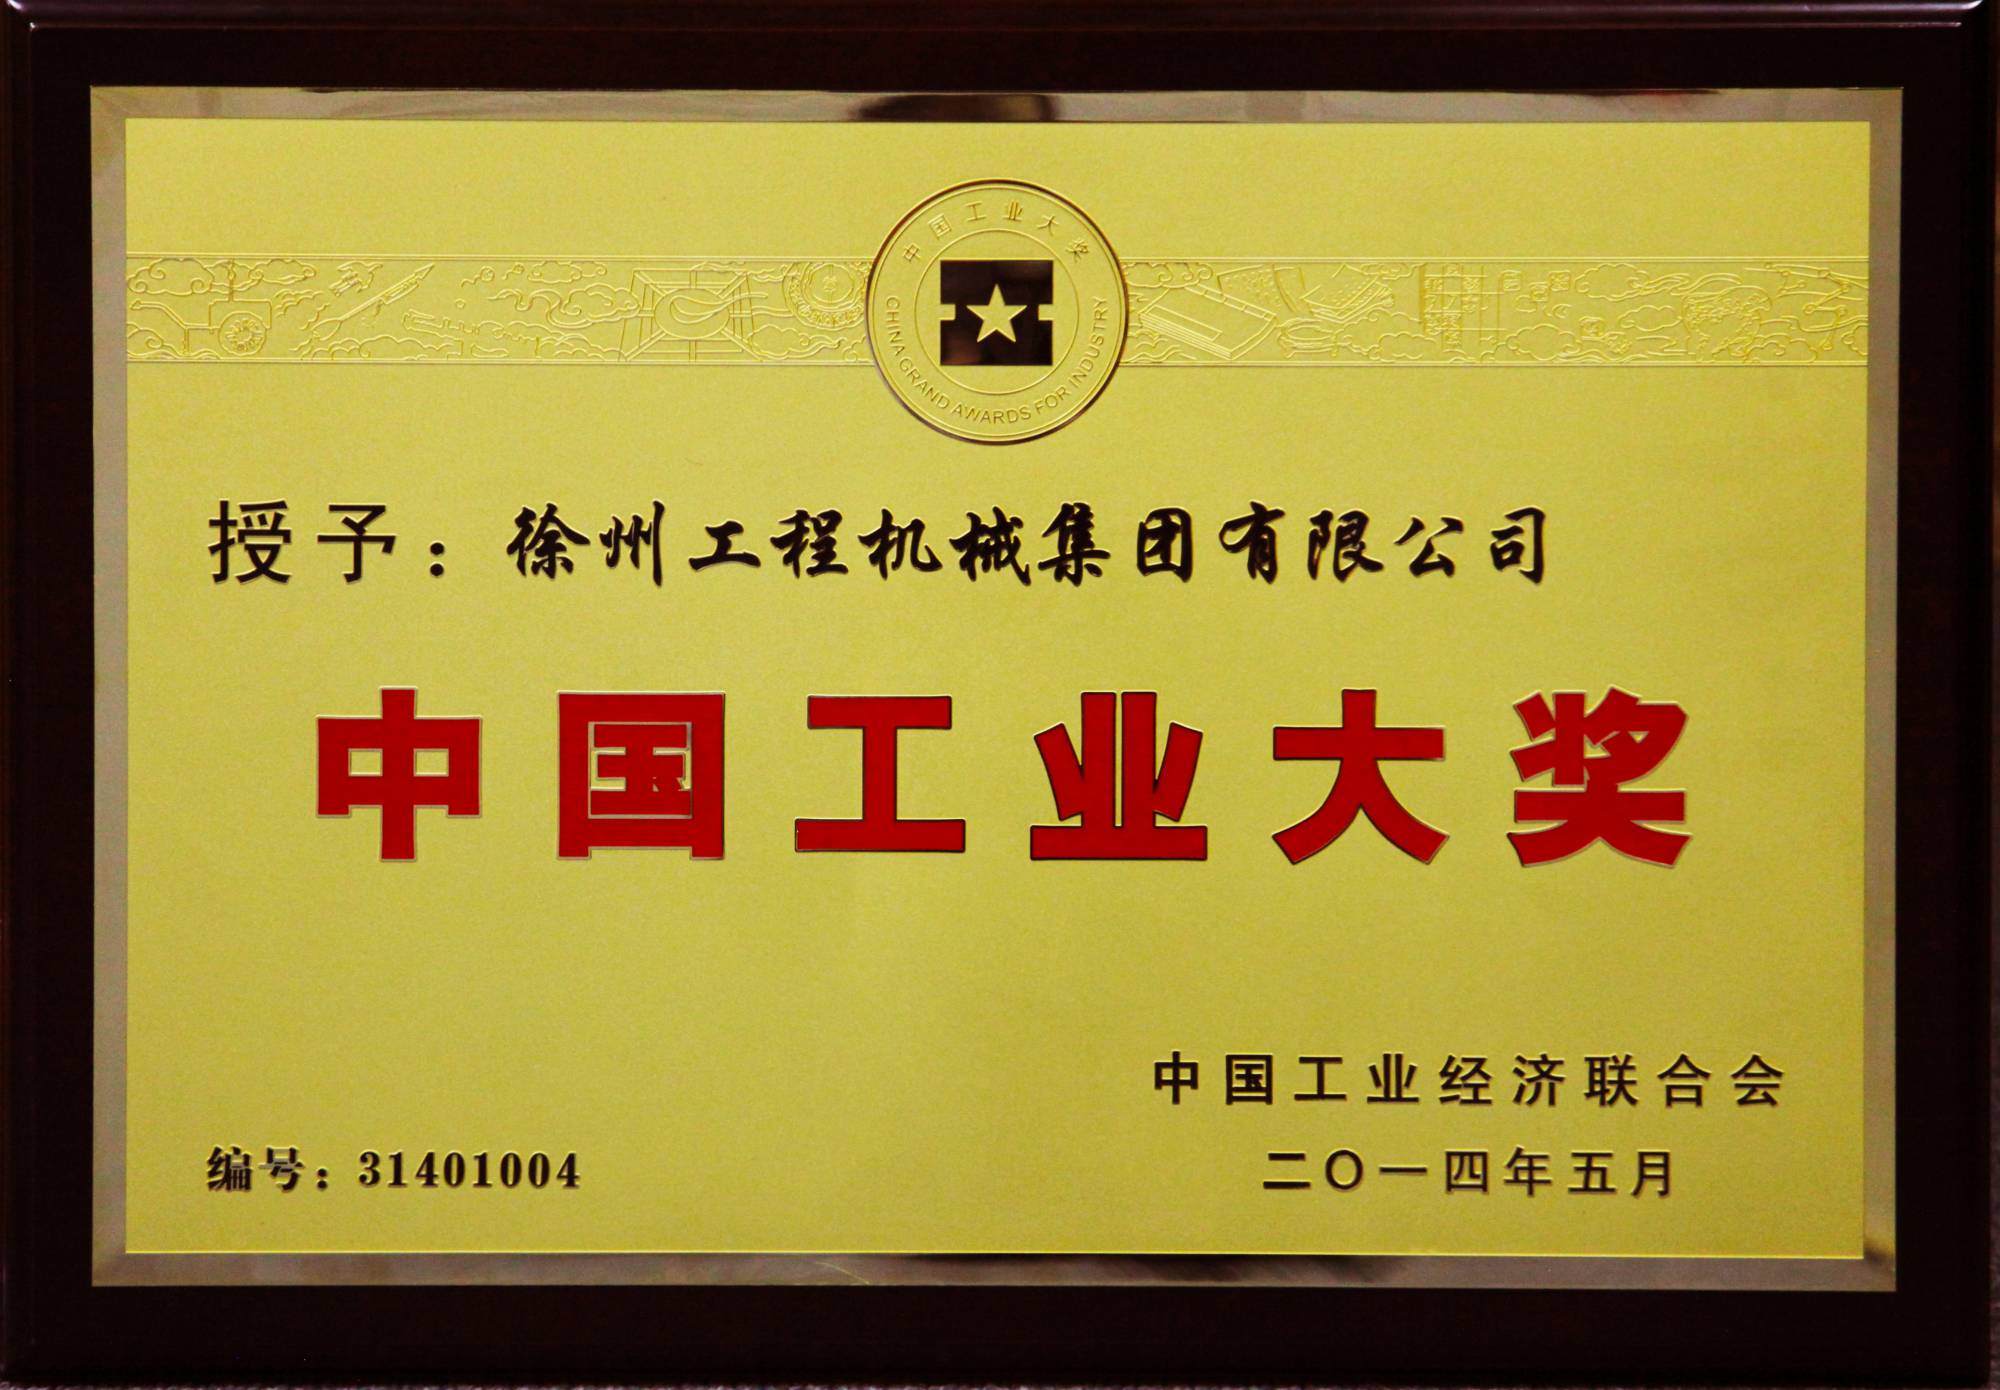 赢咖6荣膺行业唯一的中国工业领域最高奖项——中国工业大奖